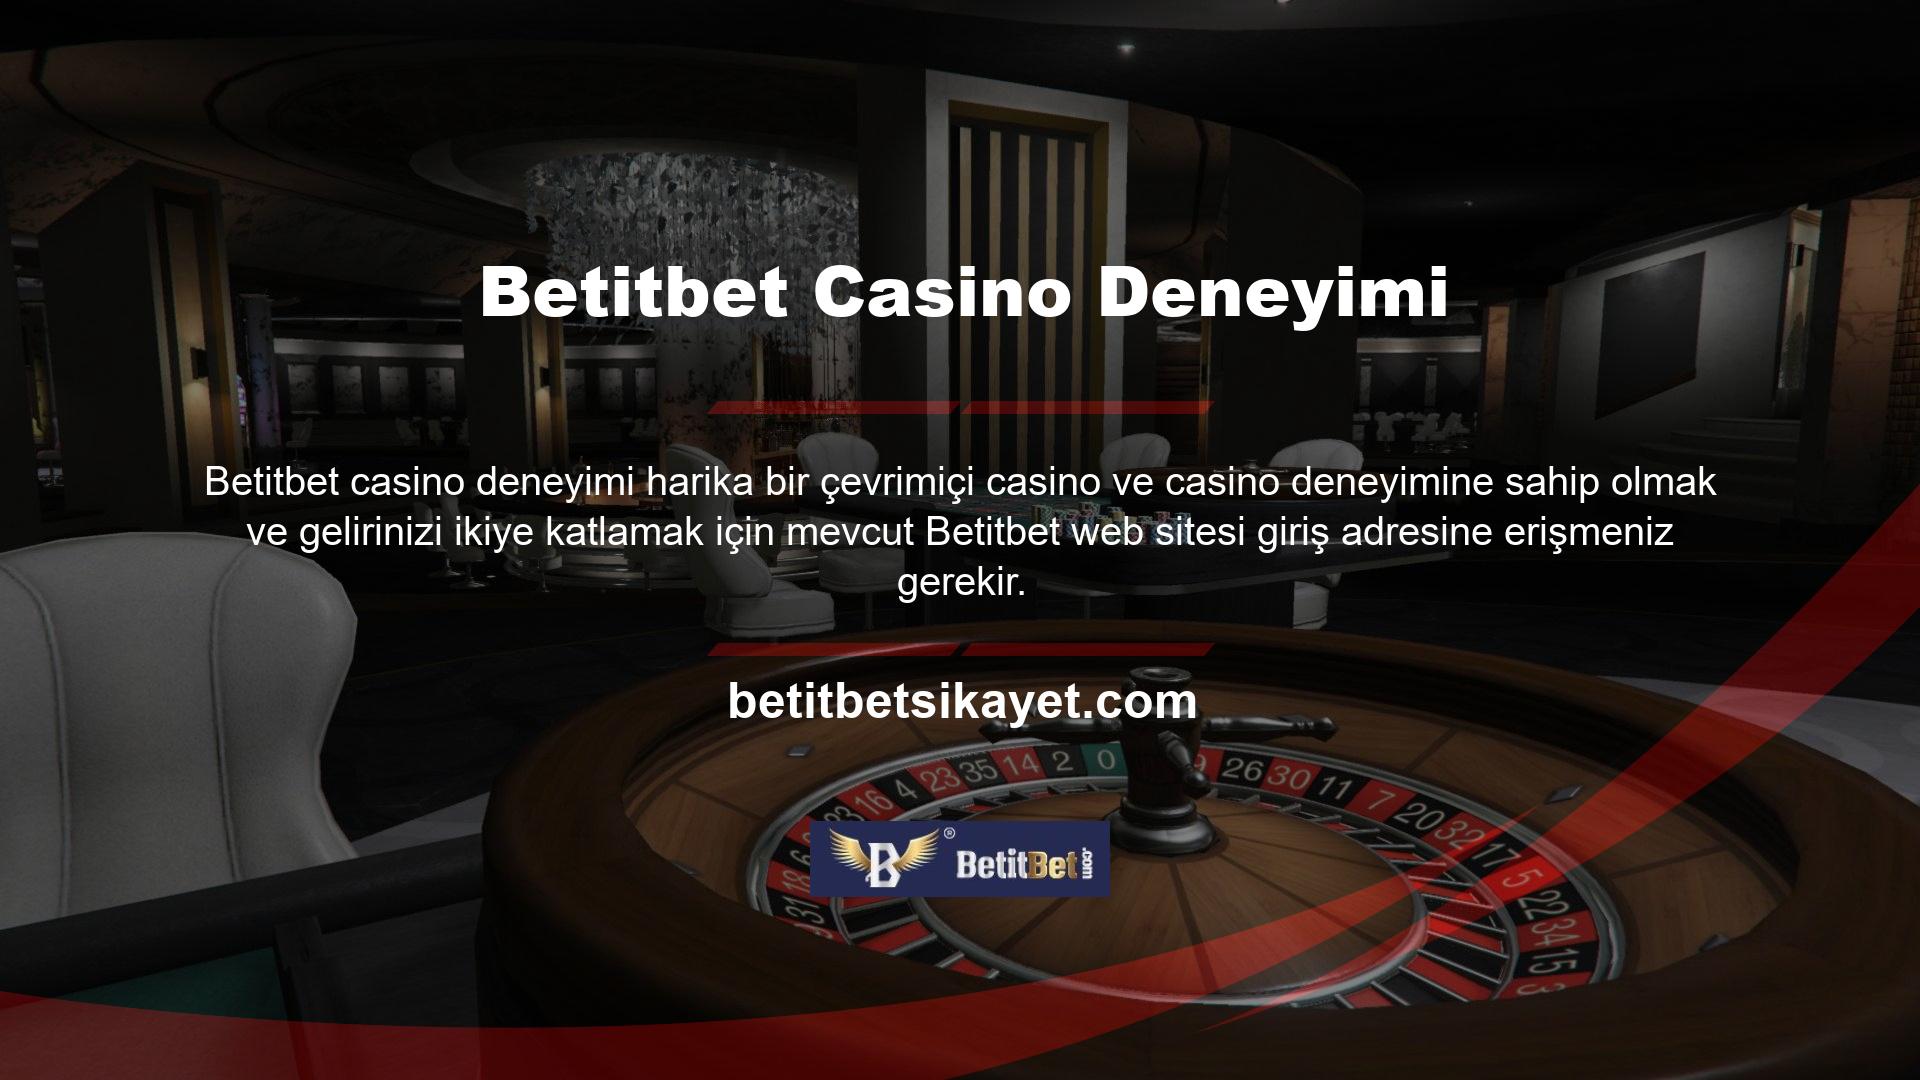 Bu platform Türkiye'deki yasa dışı casino sitelerinden biri olduğundan TİB yasakları nedeniyle adresini sık sık güncelliyor